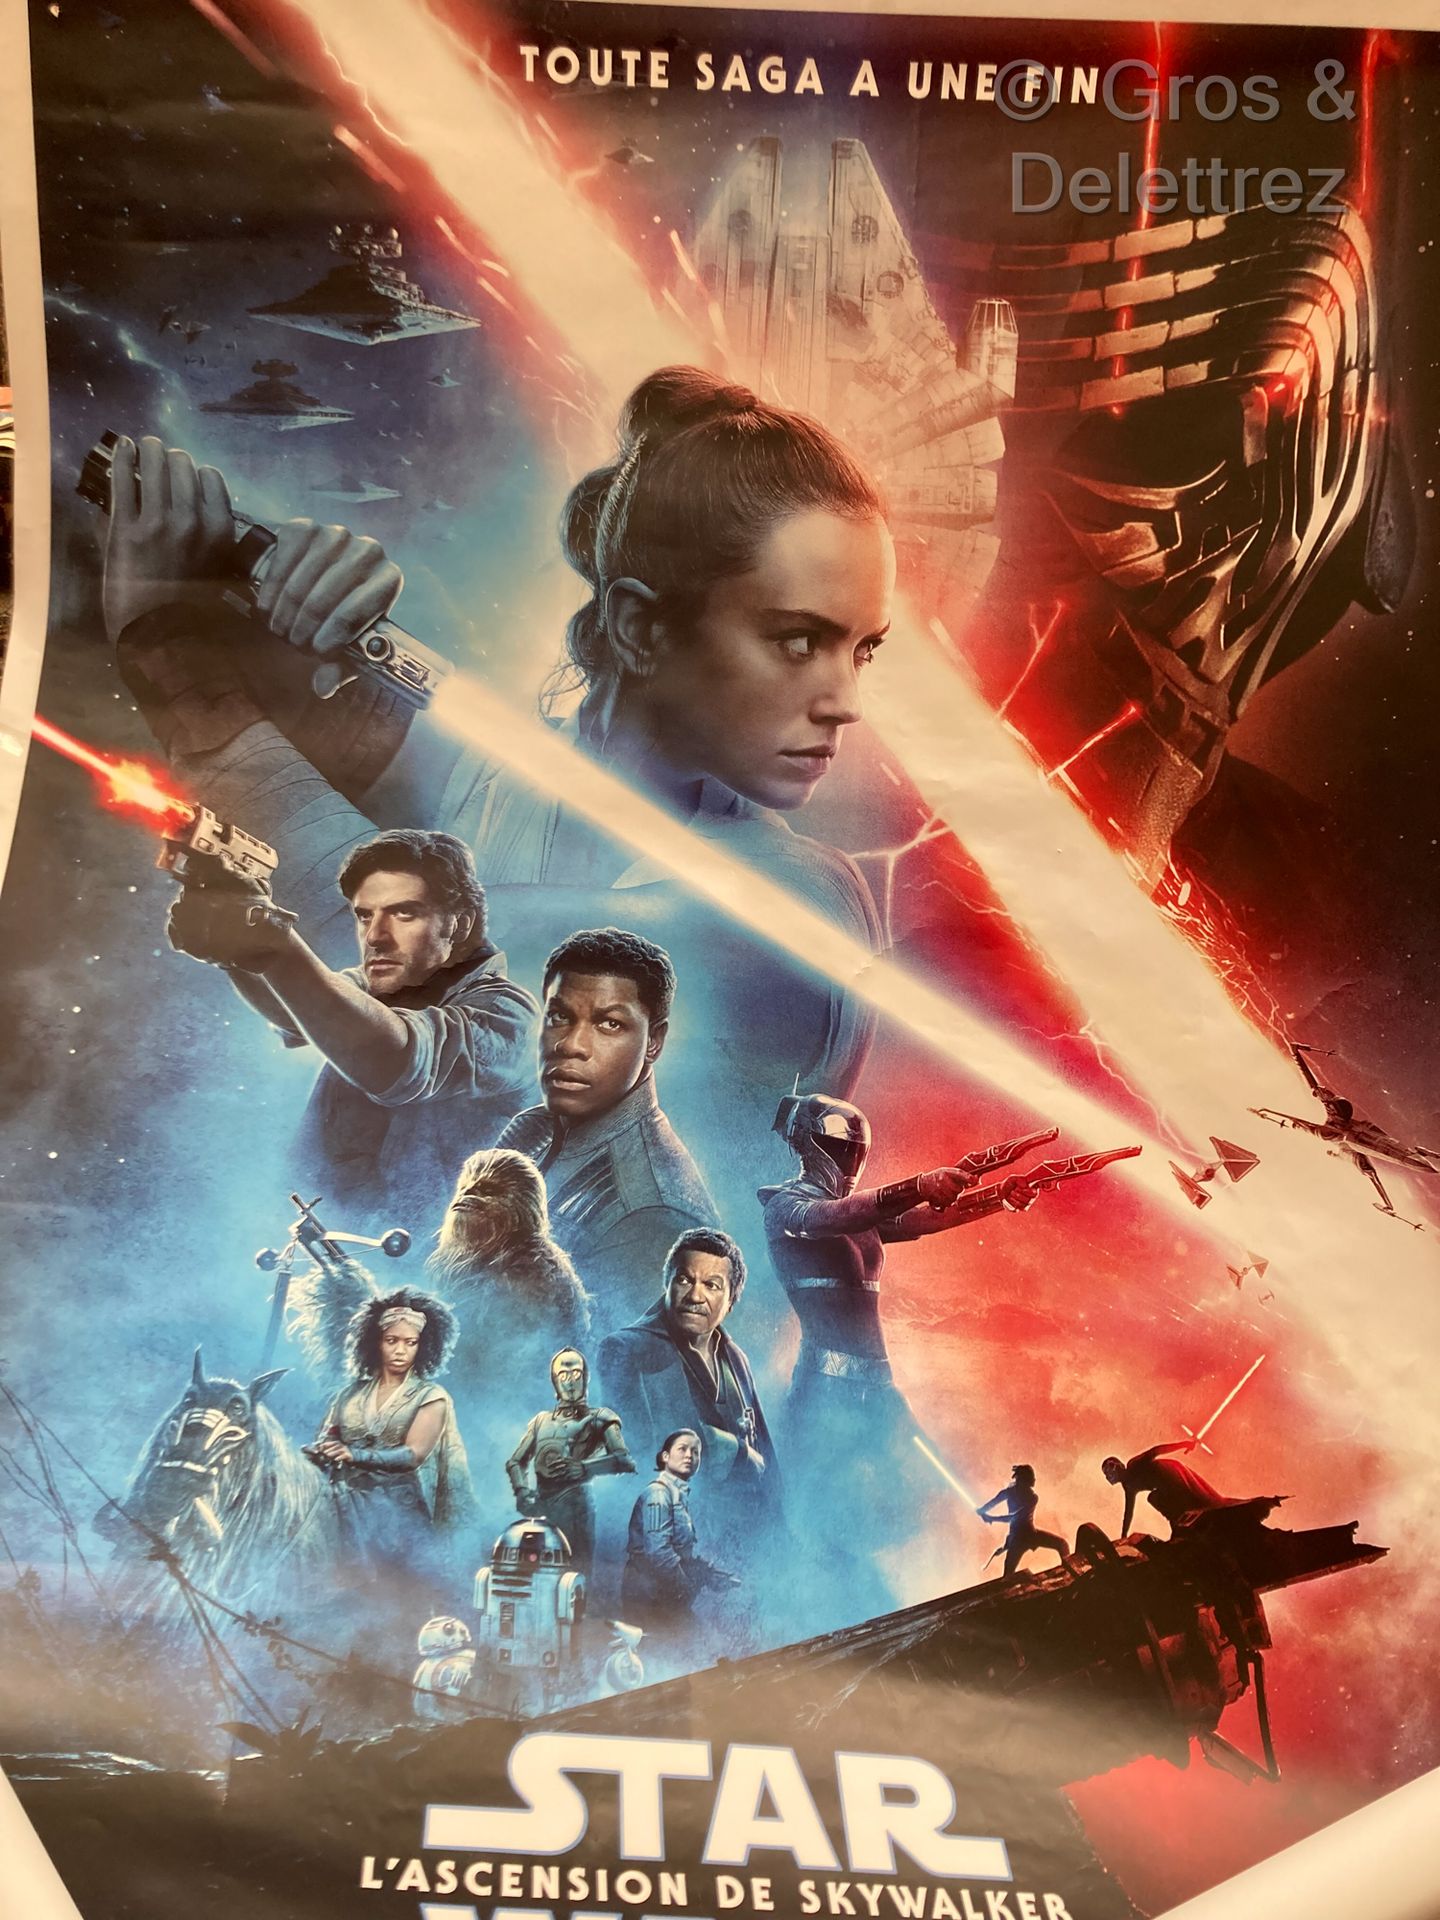 Disney & JJ Abrams Star Wars IX

Cartel de cine 159 x 119 cm. Agujeros